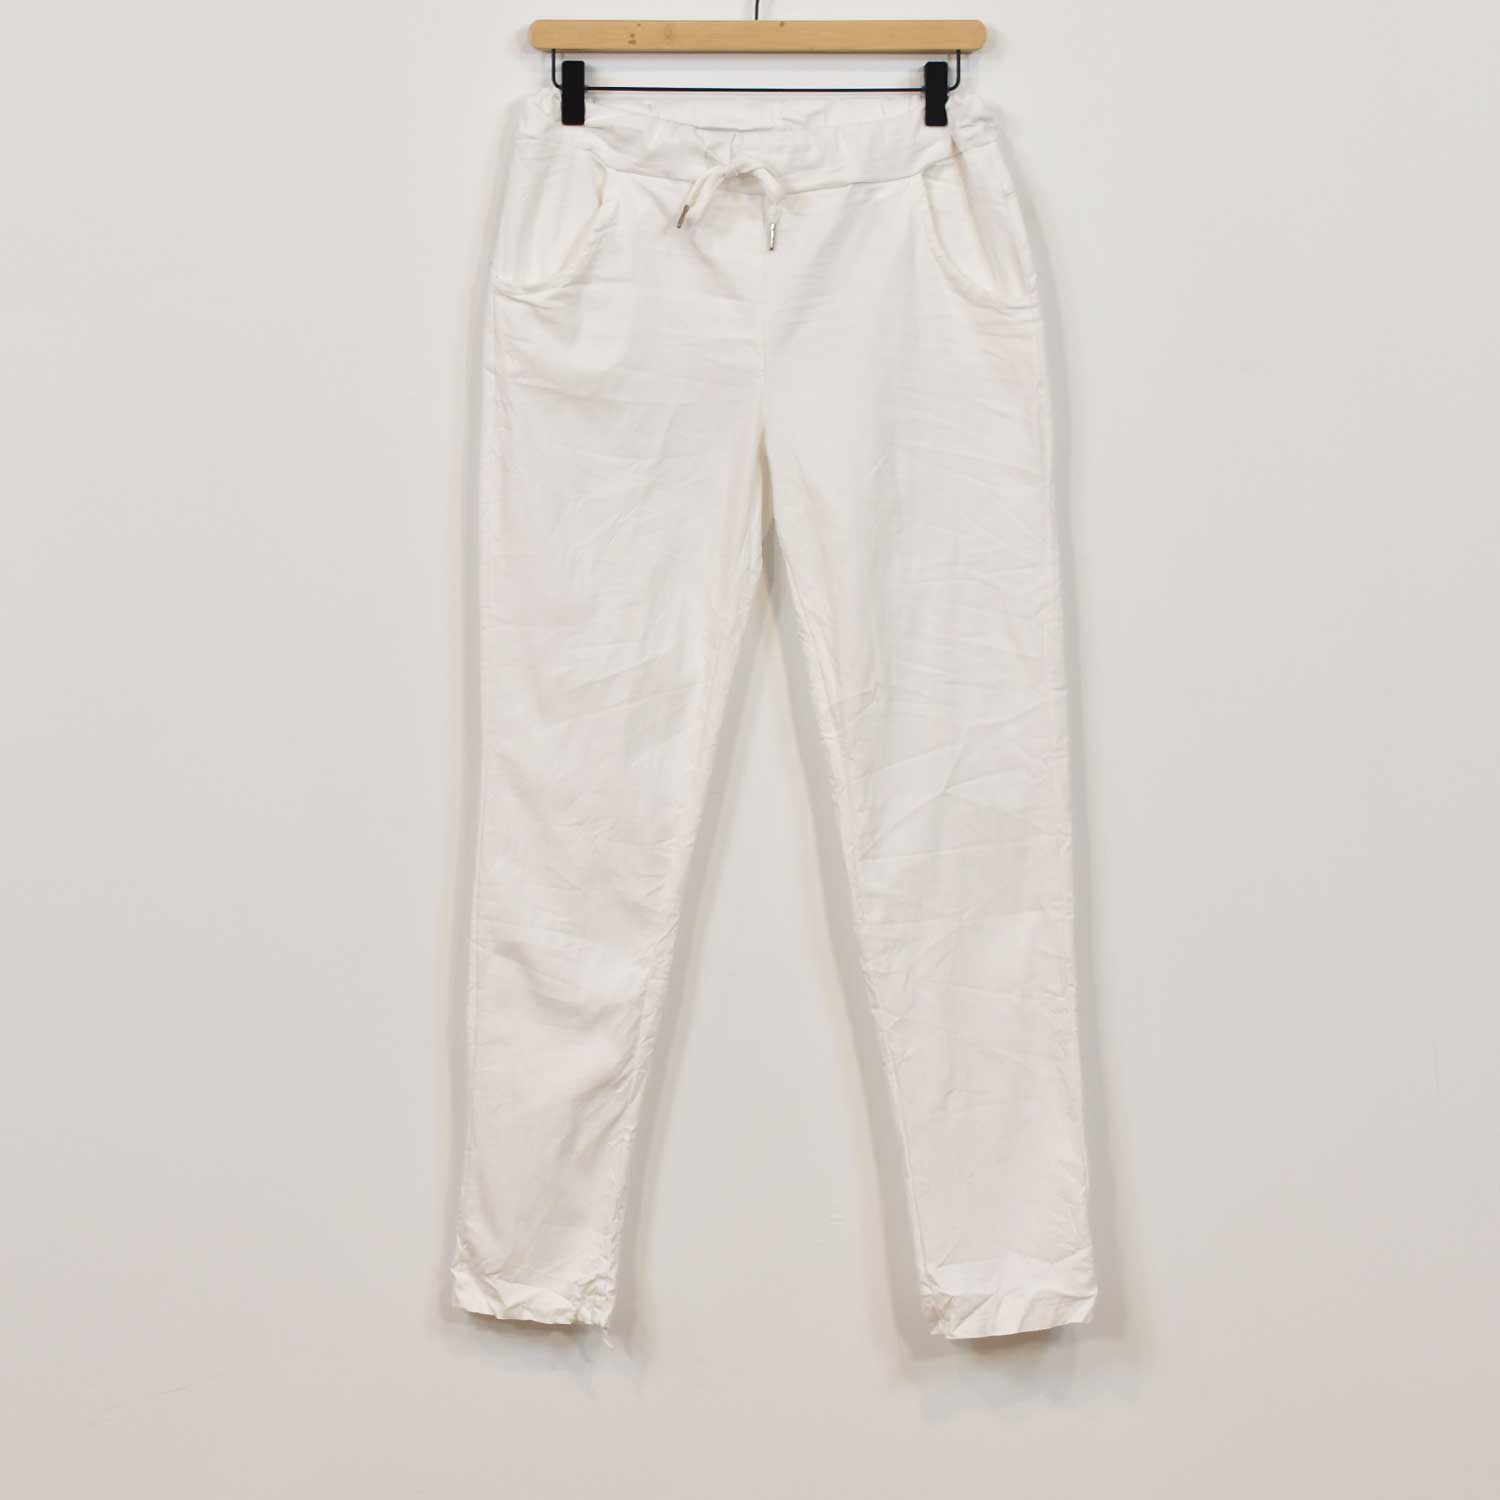 Pantalon élastique blanc